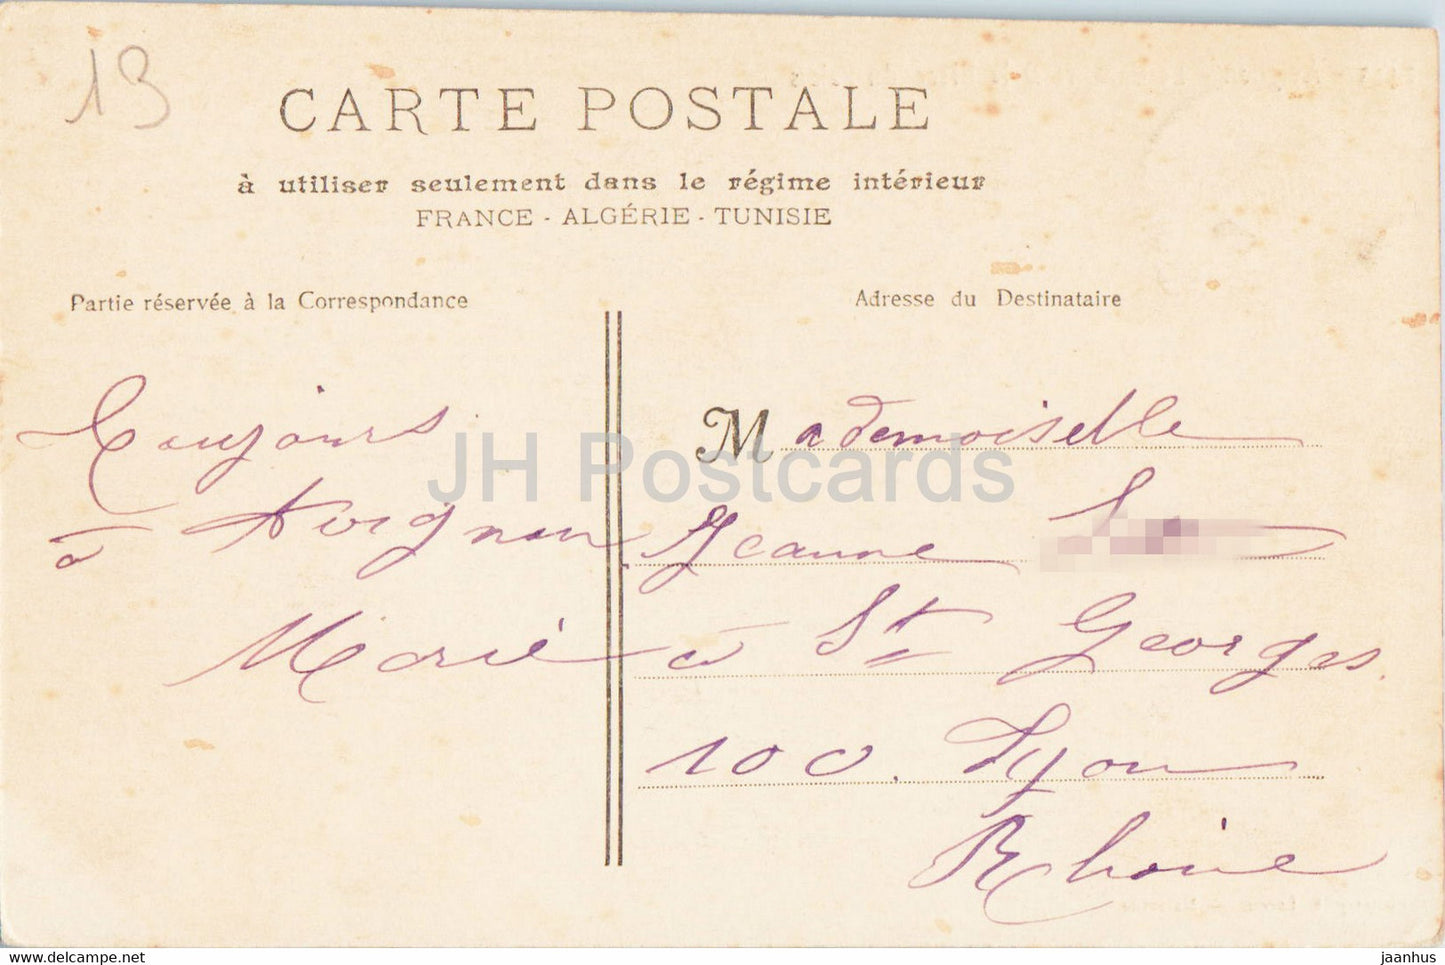 Avignon - Le Calvaire et la Place du Palais - alte Postkarte - 1905 - Frankreich - gebraucht